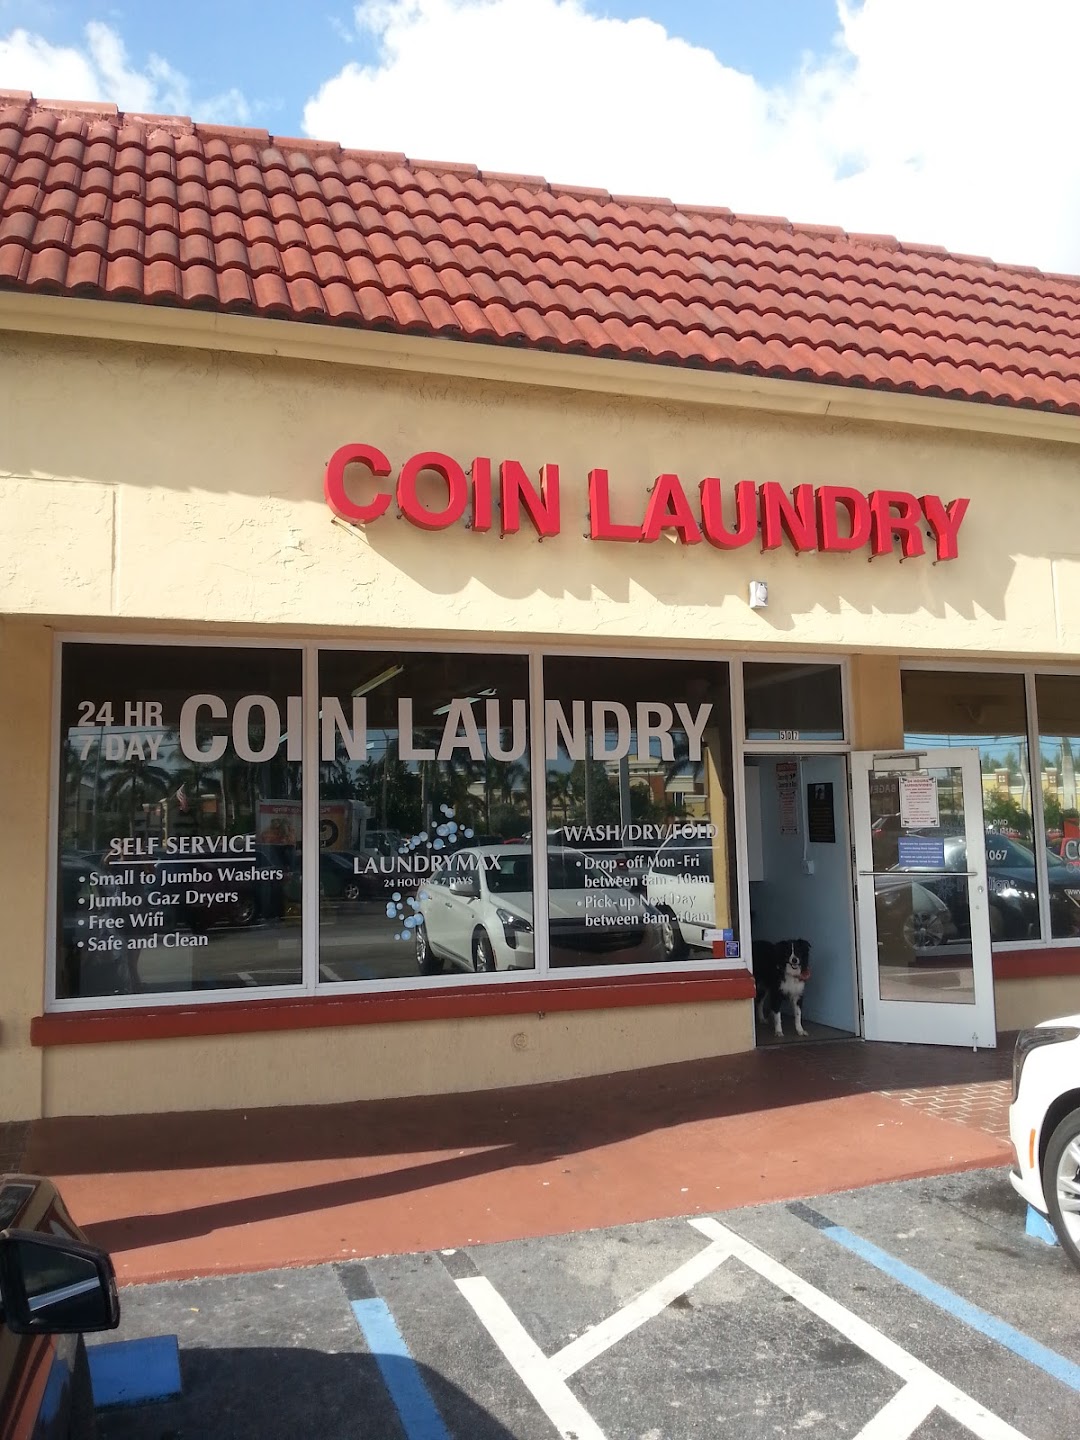 Coin Laundry Boca Laundrymax 